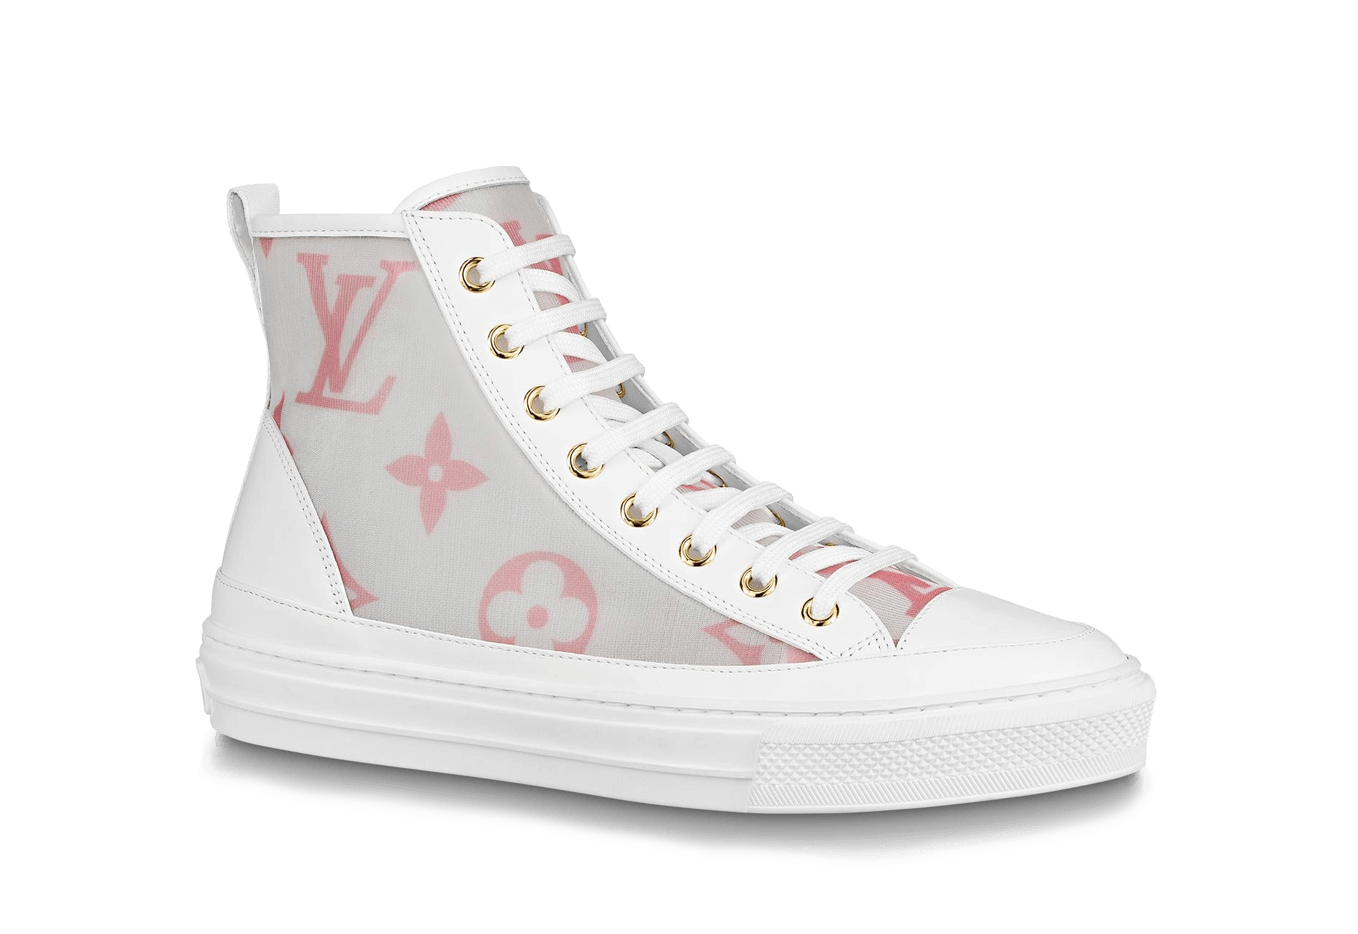 Louis Vuitton     Stellar Pink shoes price